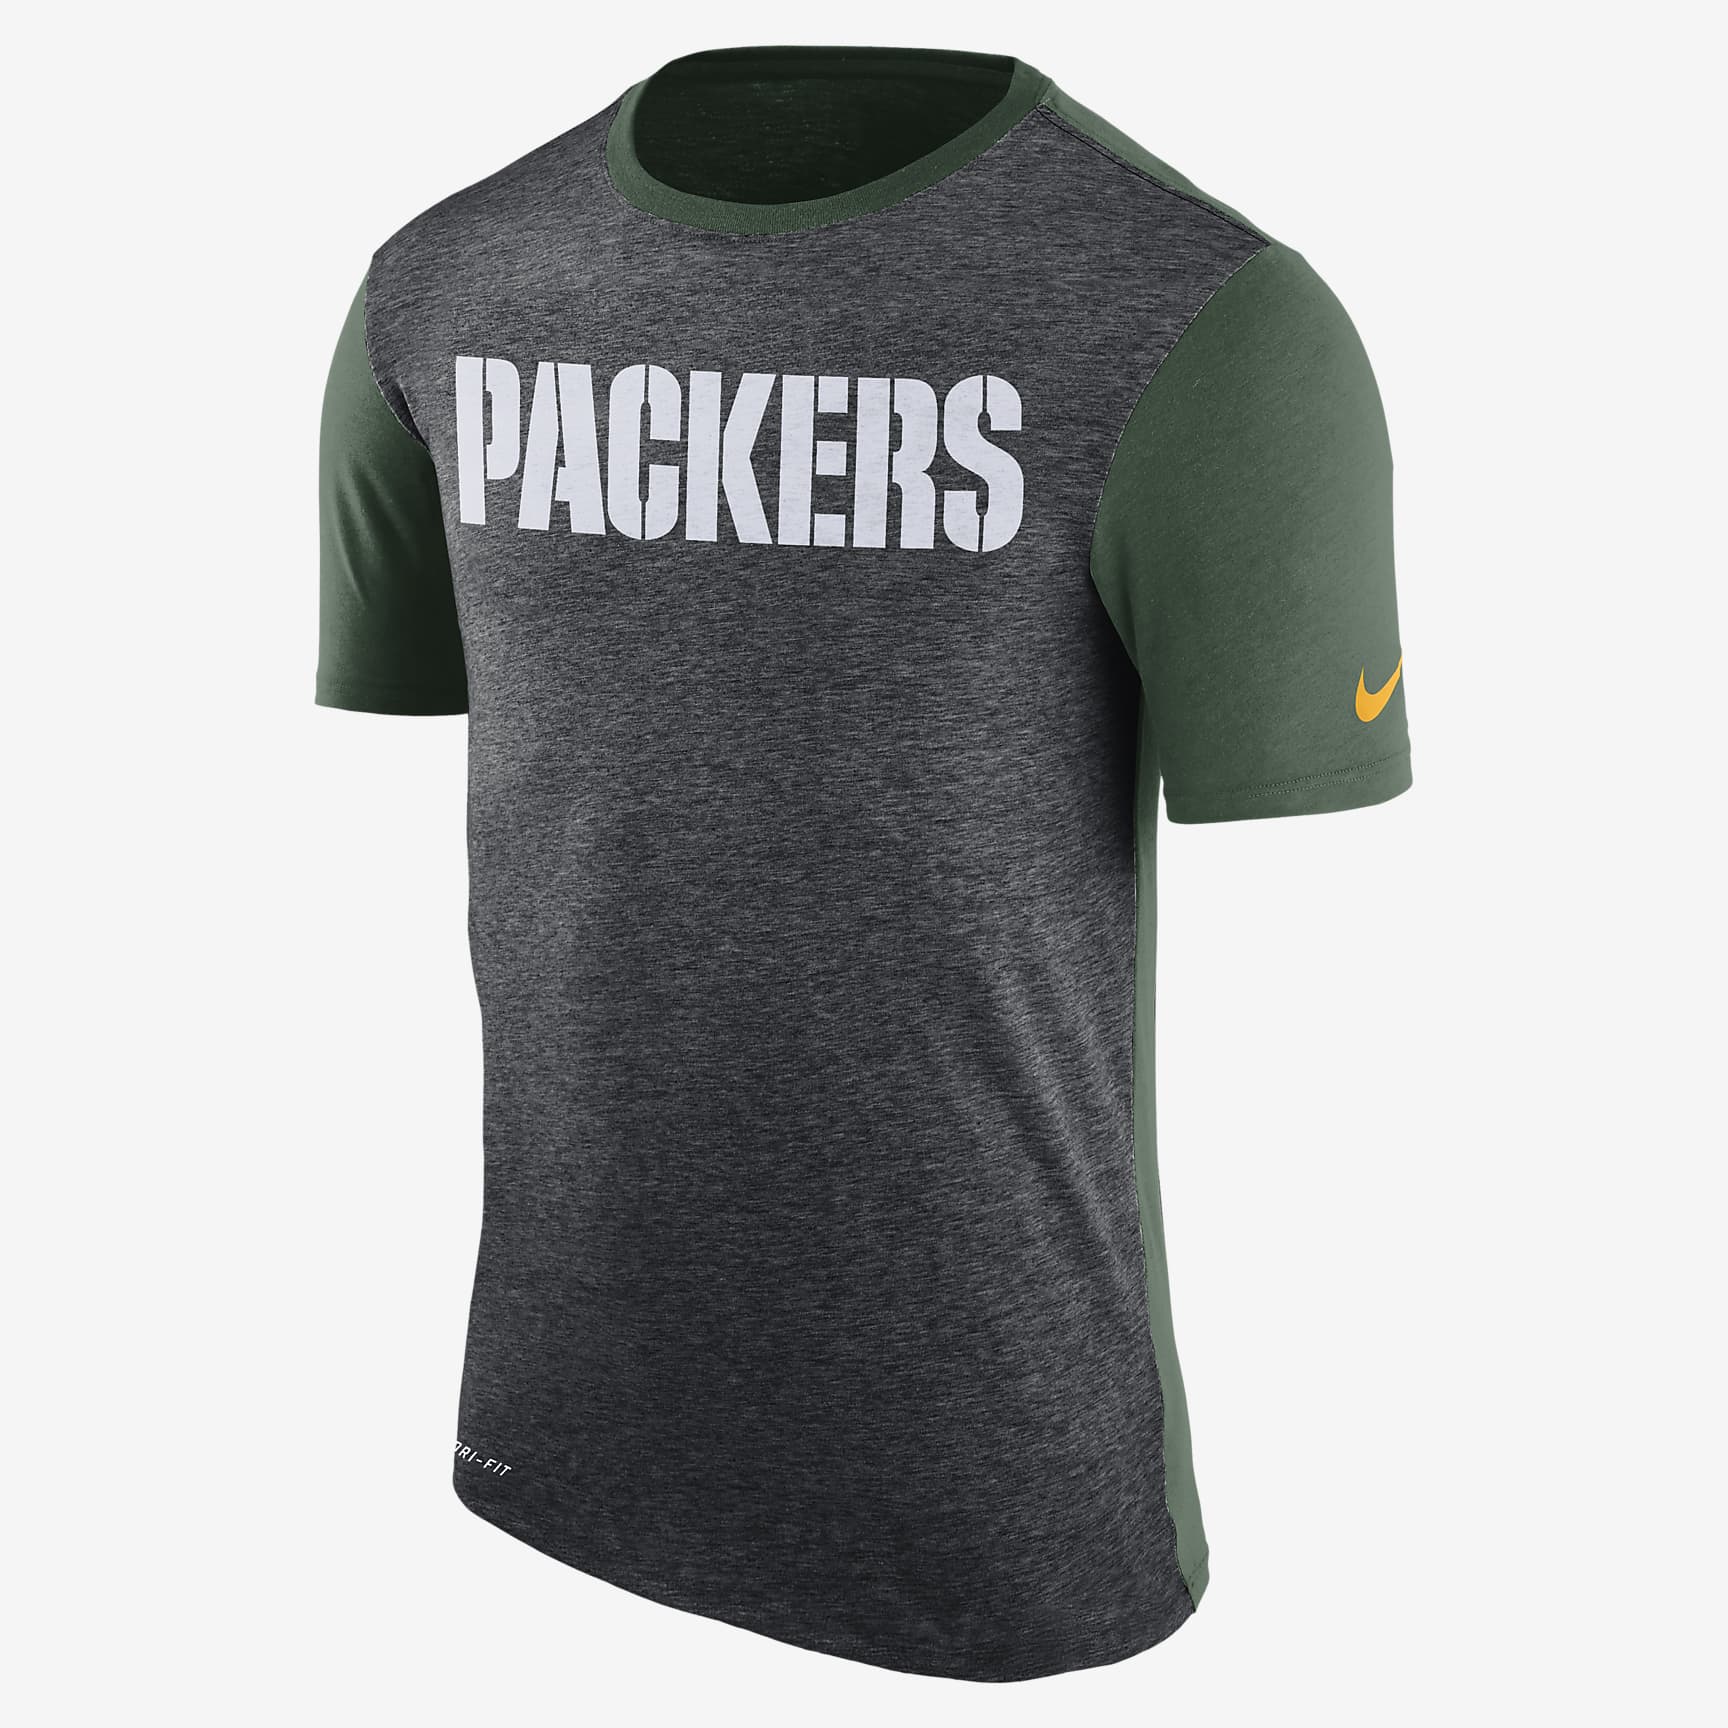 Nike Dry Color Dip (NFL Packers) Men's T-Shirt. Nike LU